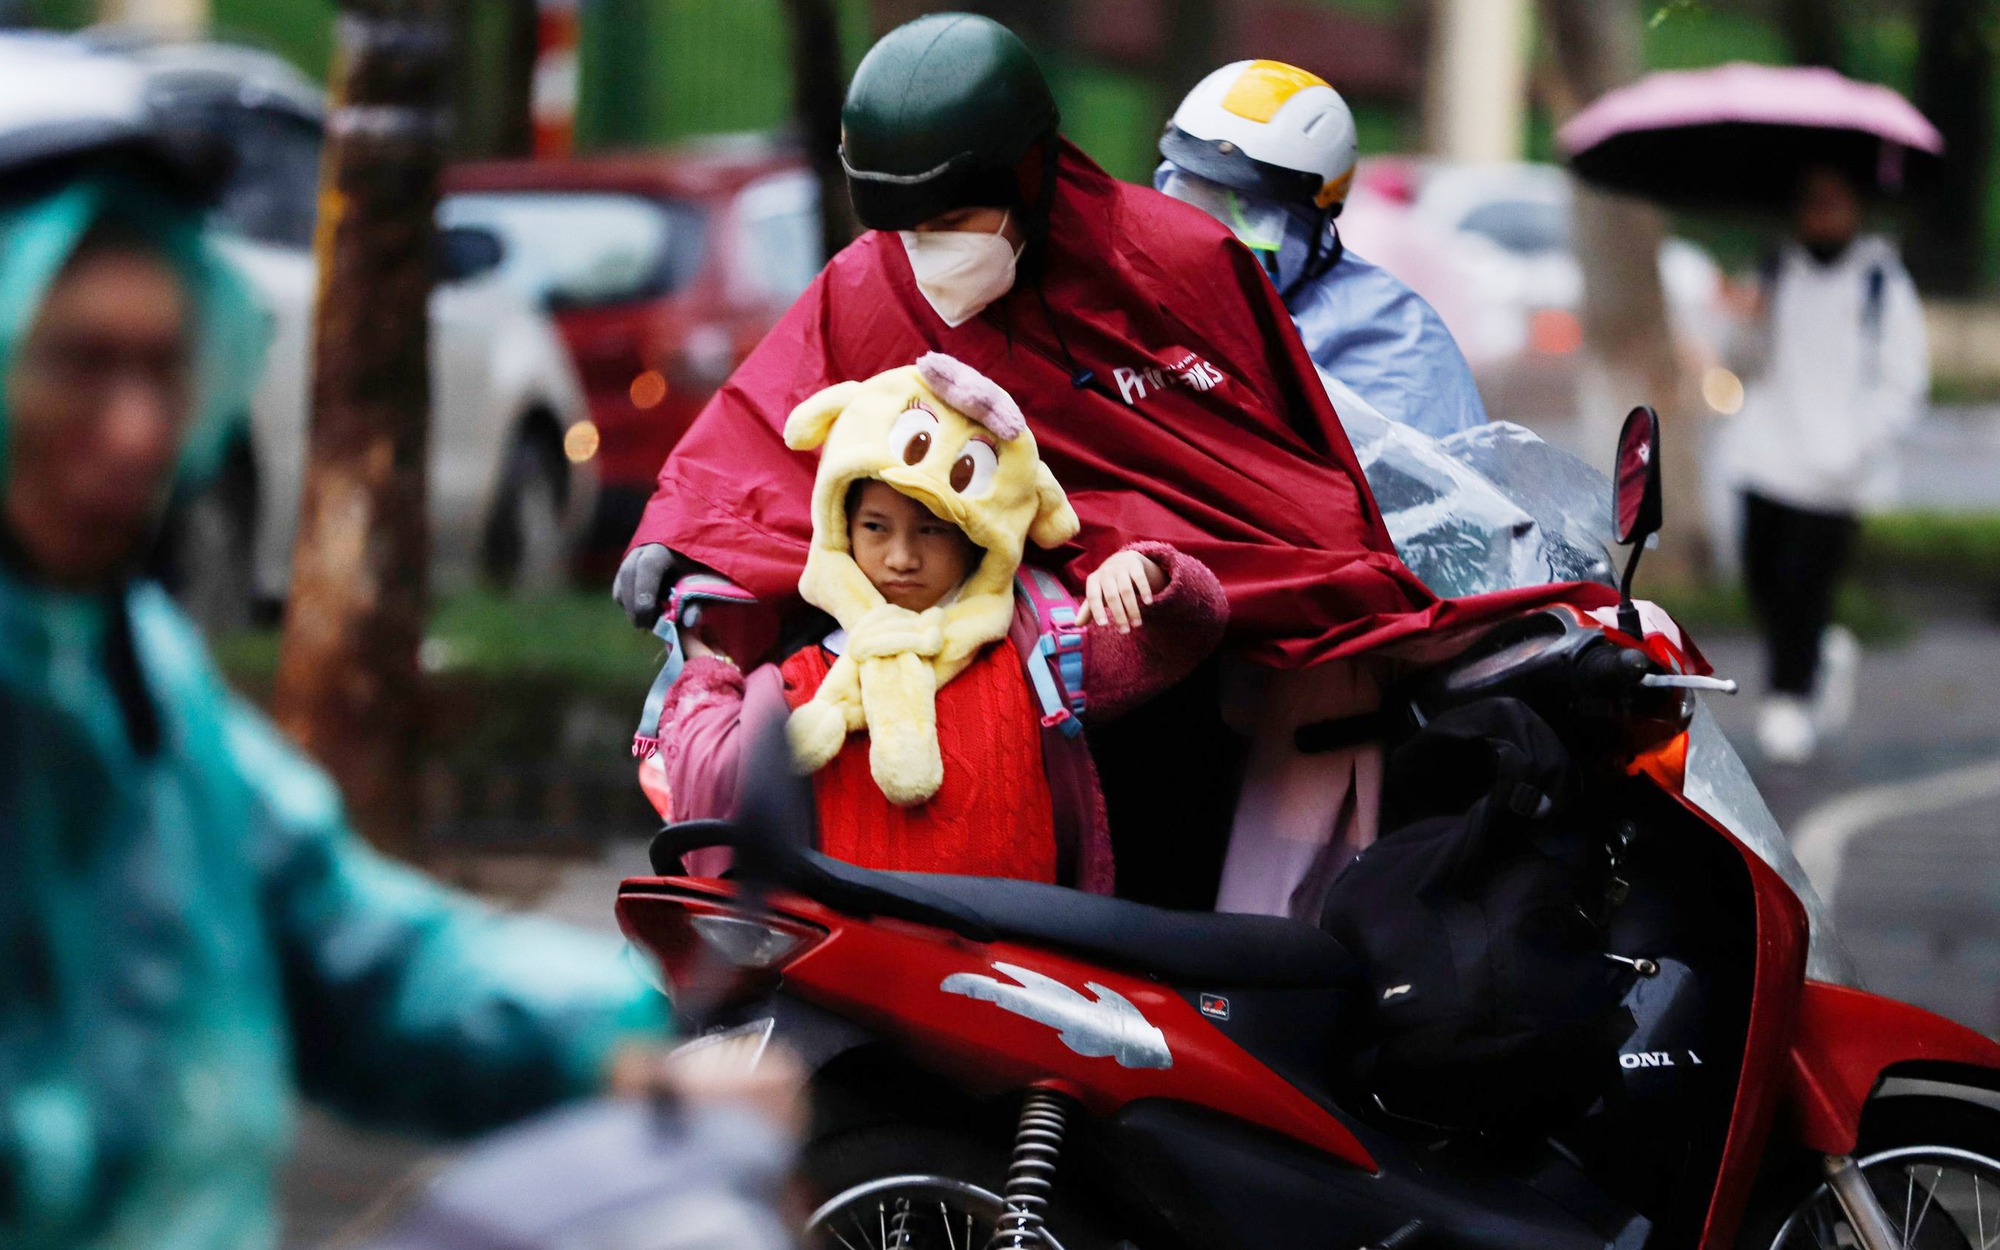 Nhiệt độ tại Hà Nội "giảm sốc", người dân chật vật đi làm trong cảnh mưa rét, tắc đường